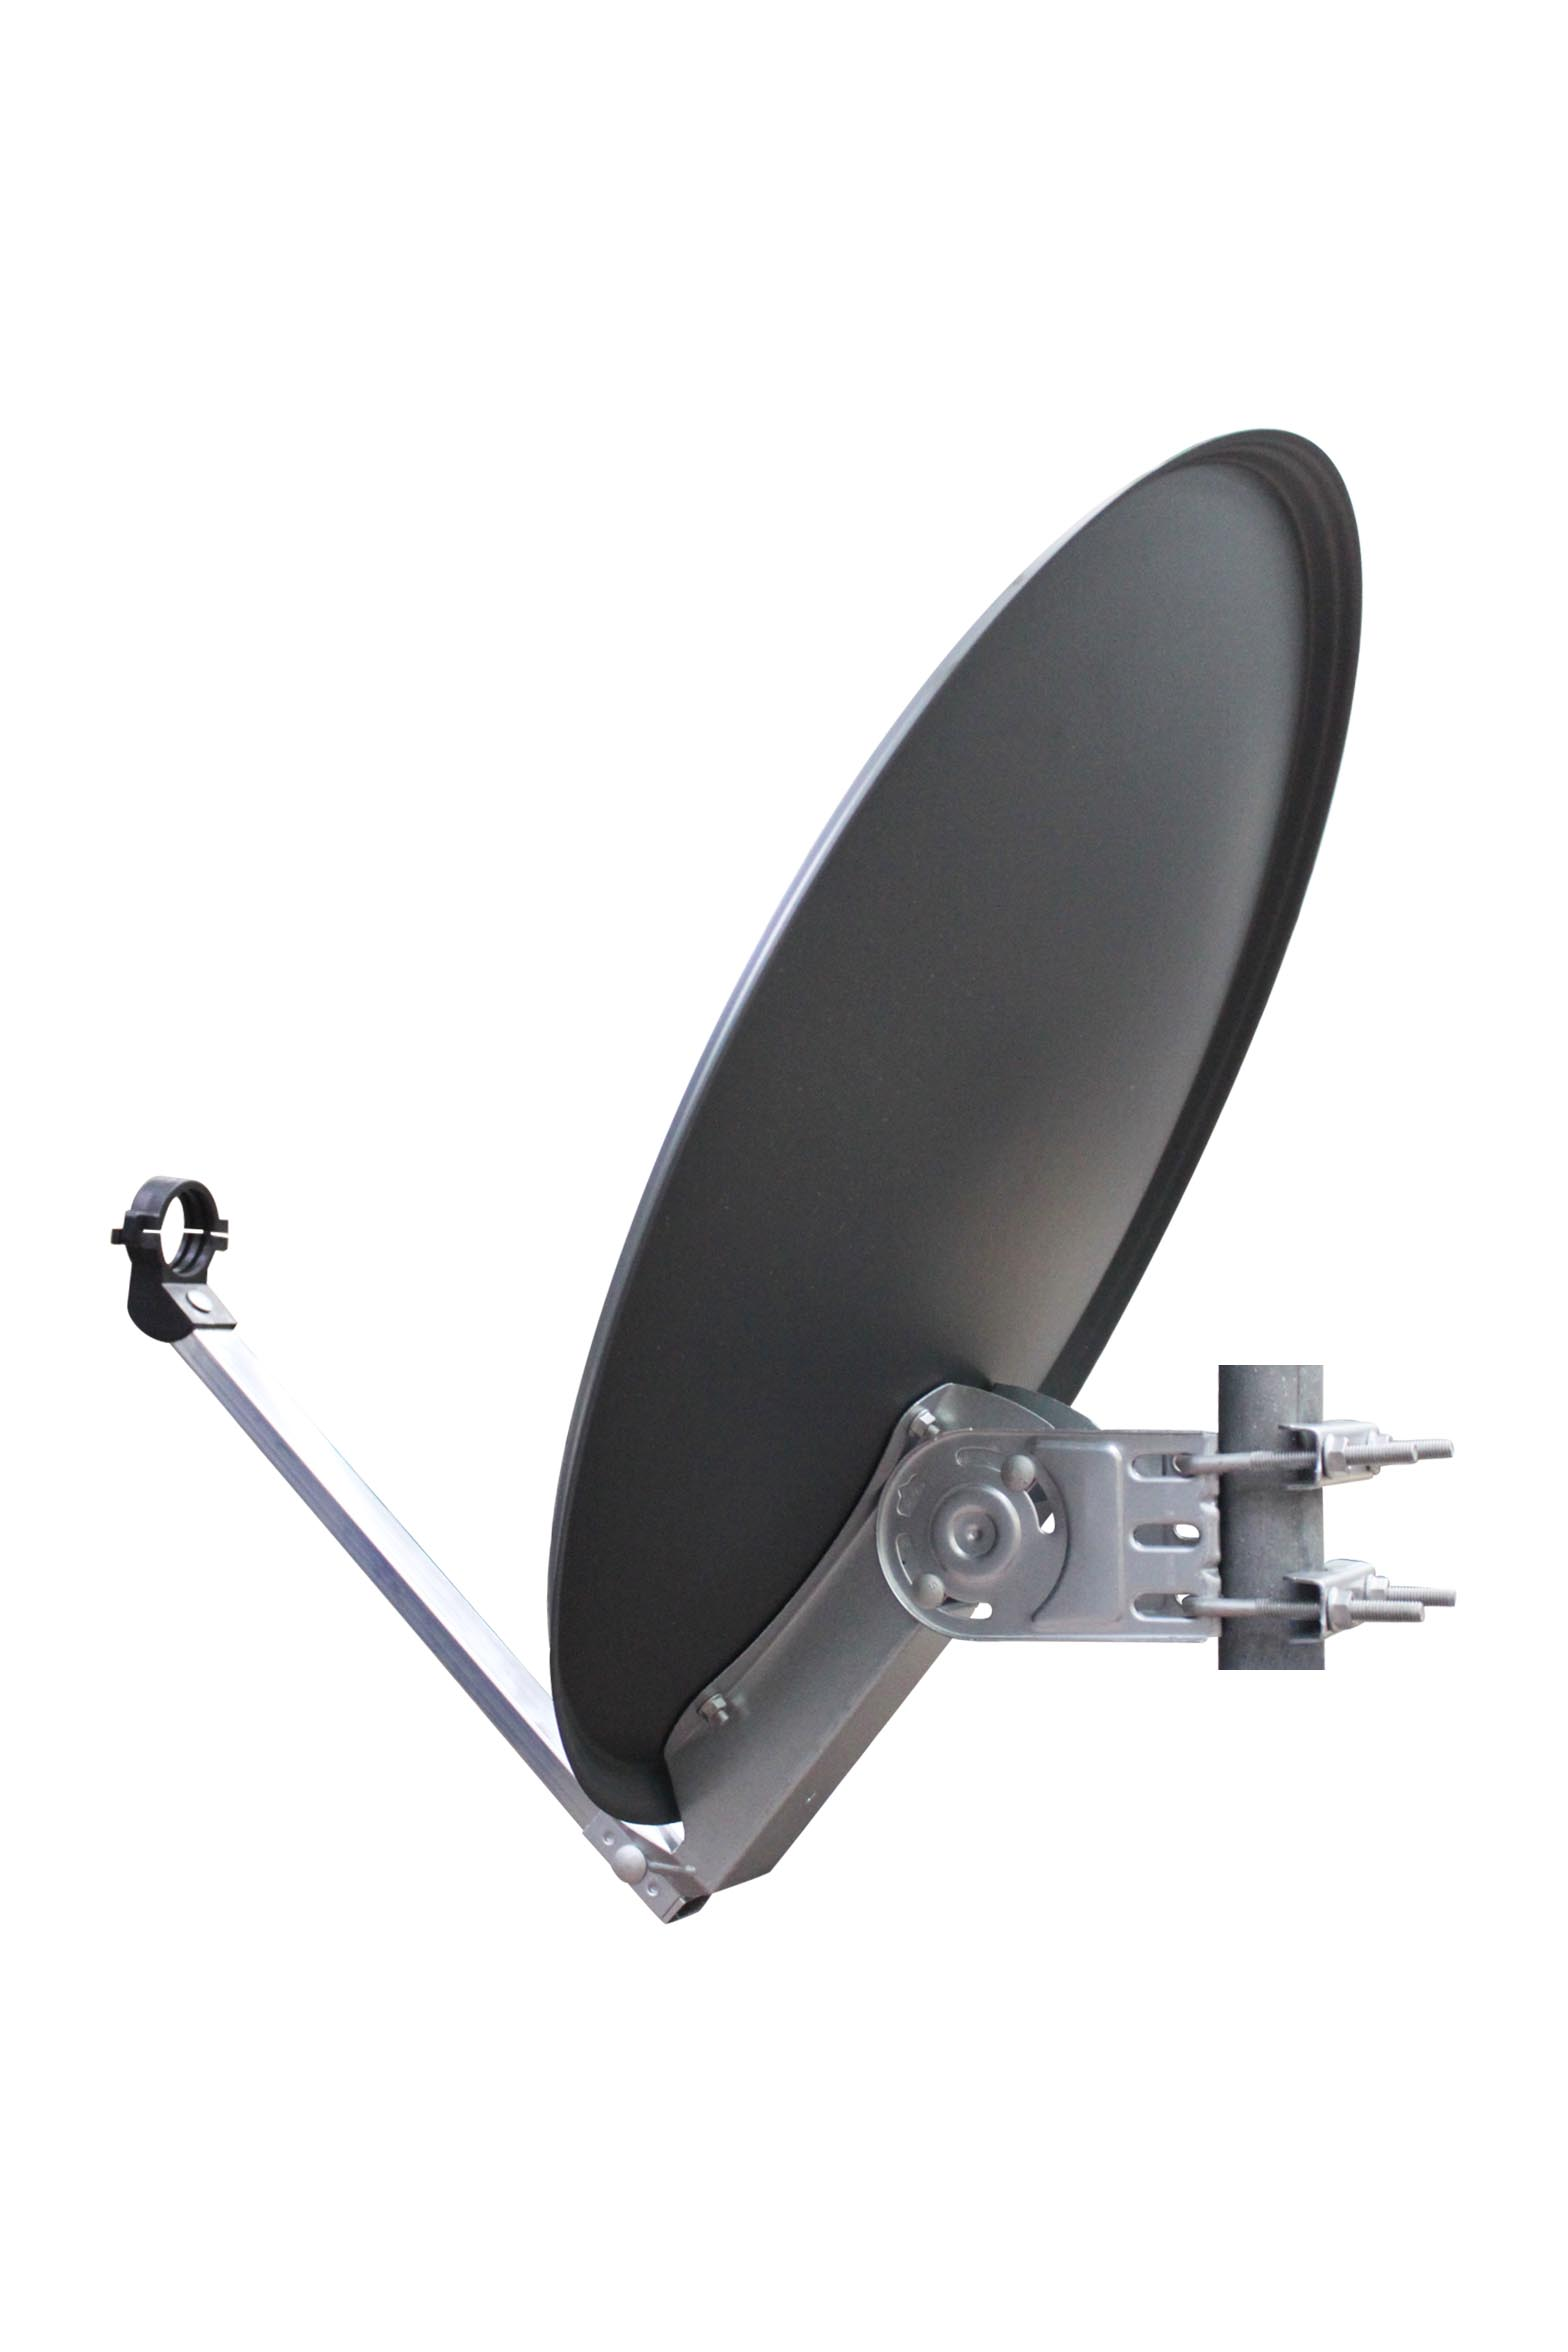 RED OPTICUM QA60 Satellitenschüssel aus Sat-Antenne Sat-Spiegel anthrazit Satellitenantenne - 60 -Witterungsbeständige 60cm Alu cm